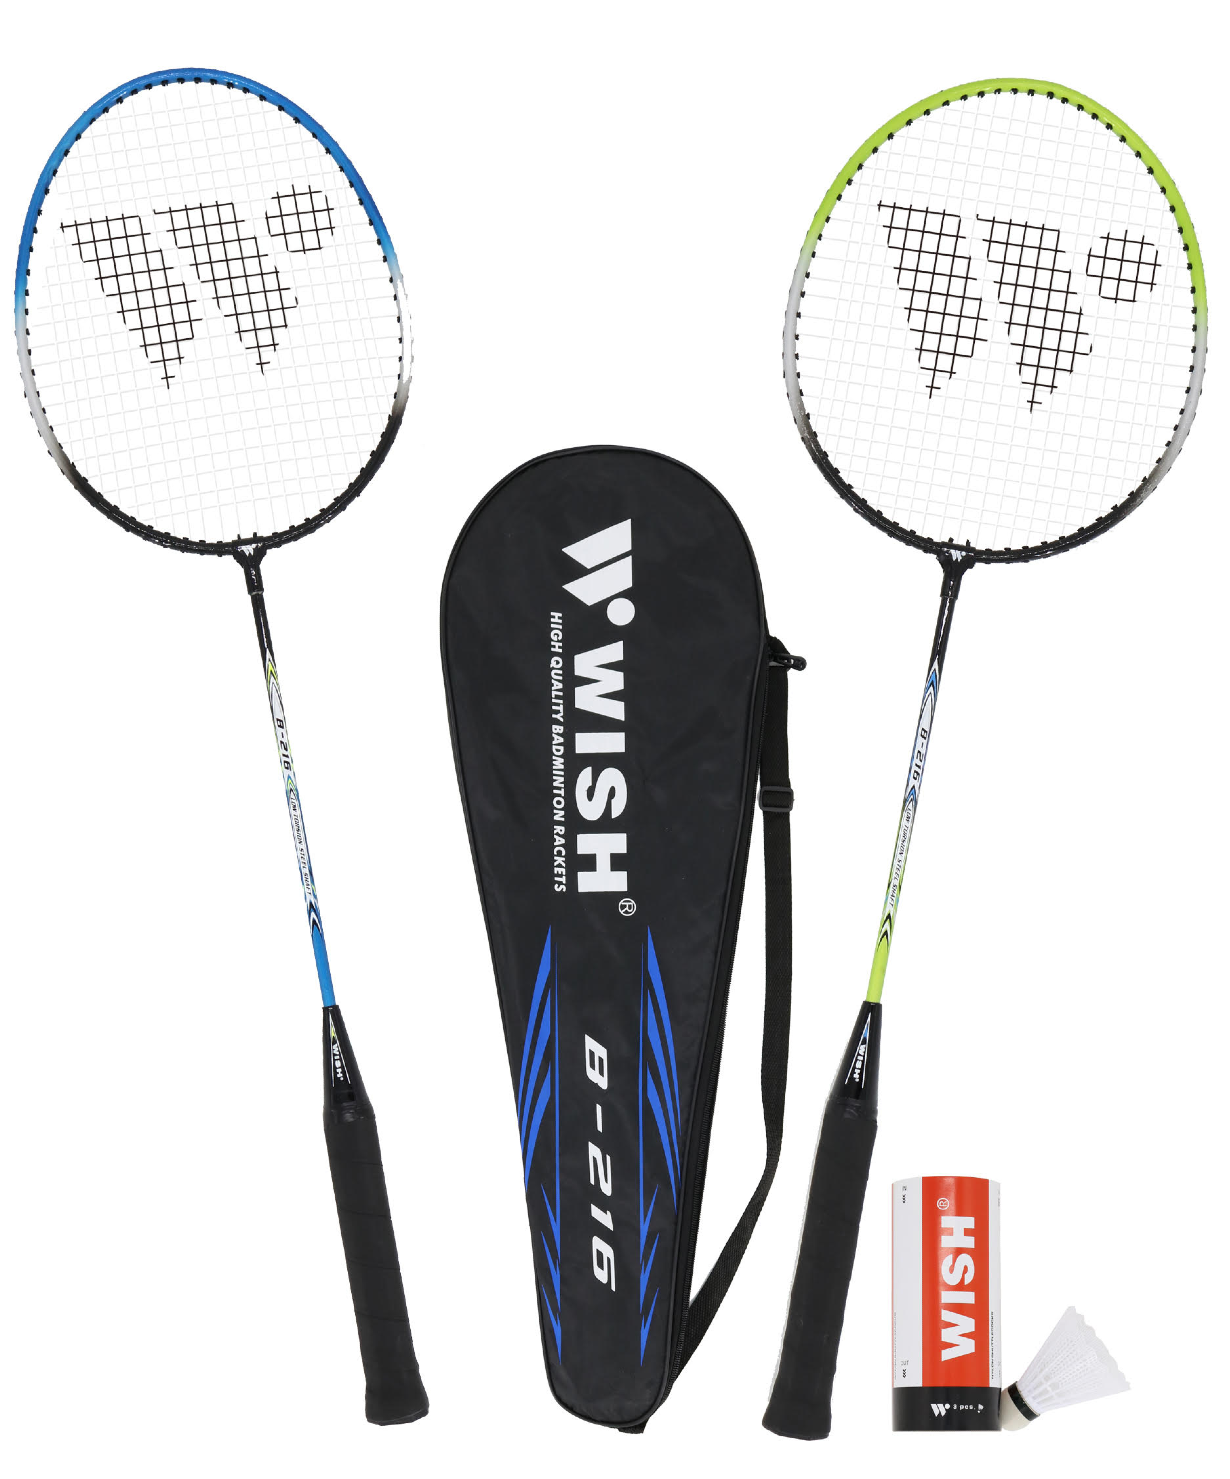 Набор для бадминтона Wish Steeltec 216, 2 ракетки + 2 волана, зеленый/синий ракетка для большого тенниса wish fusiontec 300 27’’ синий